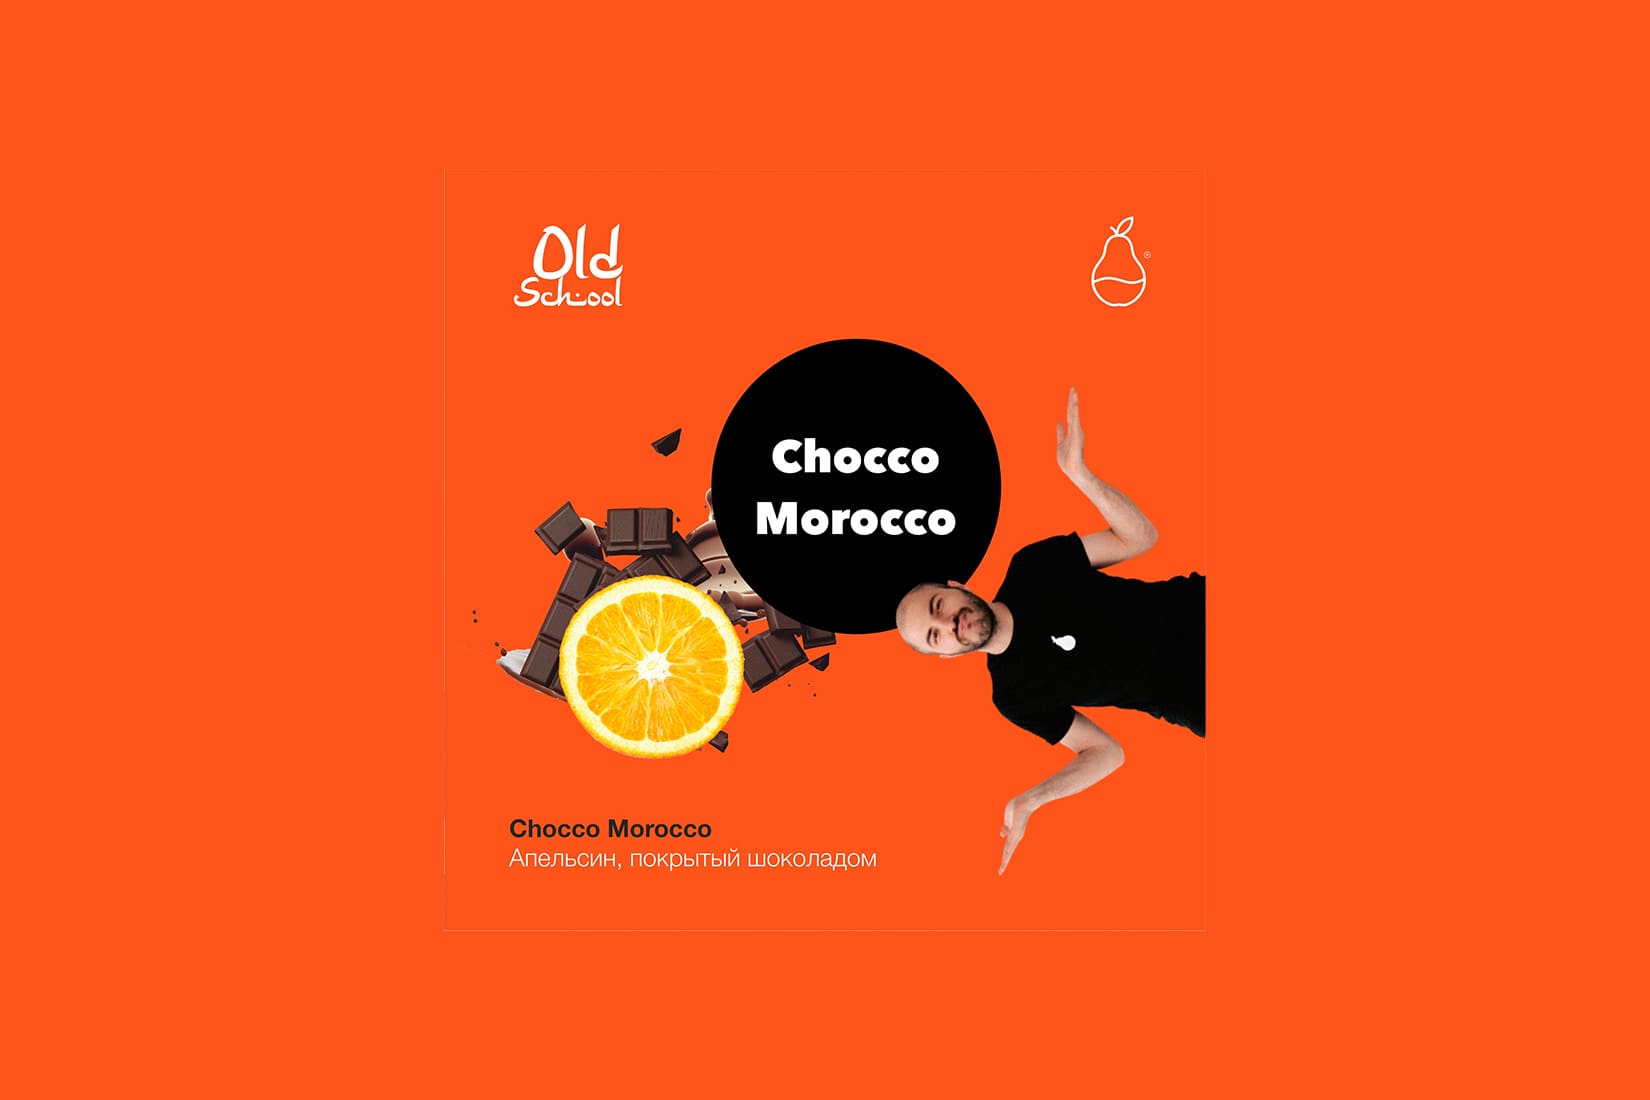 Табак для кальяна MattPear Old School Chocco Morocco – описание, миксы, отзывы